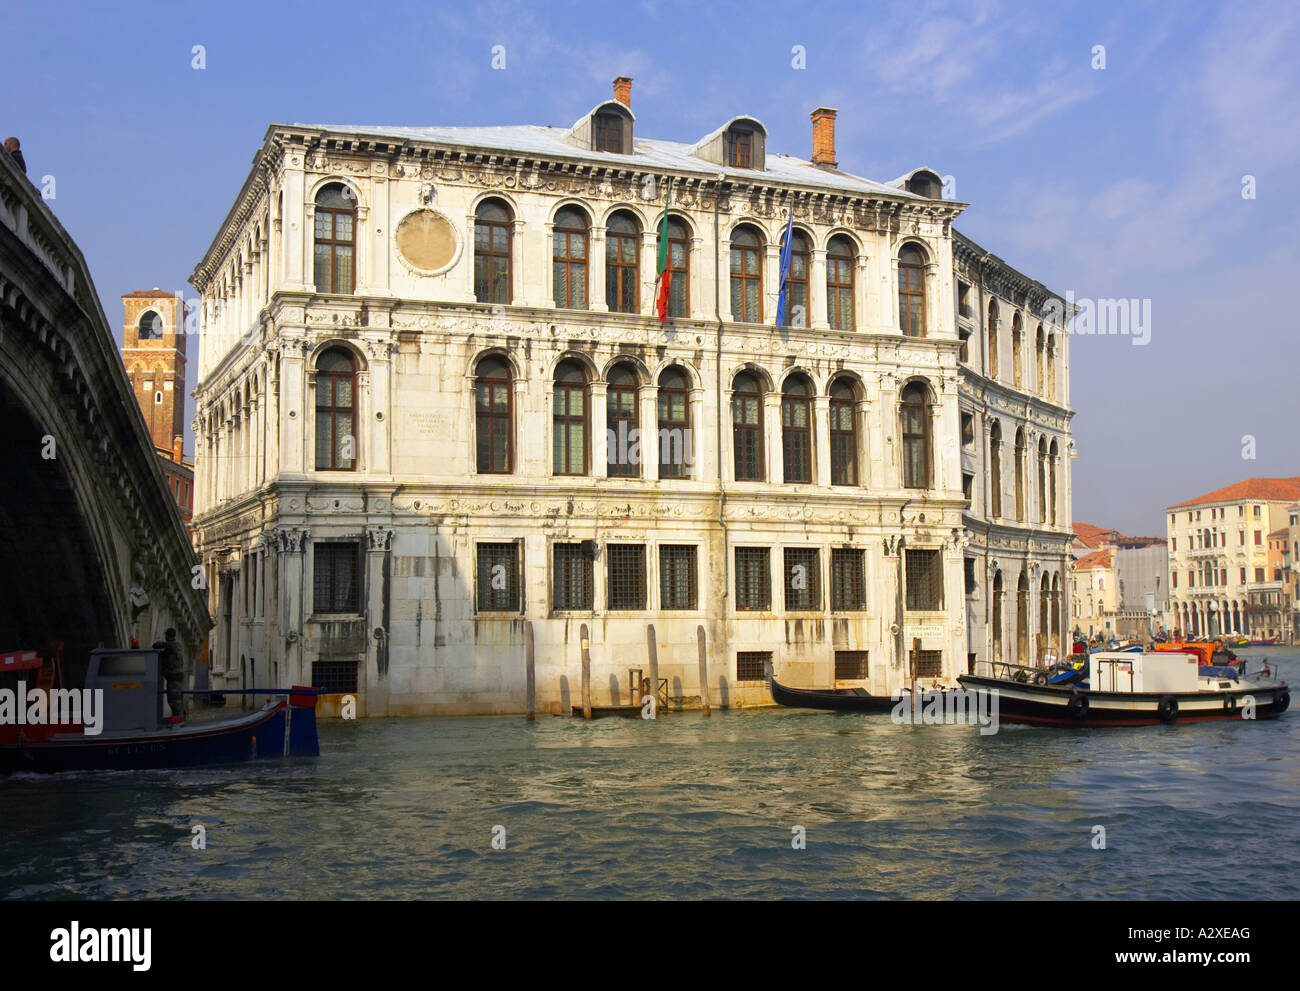 Palazzo dei Camerlenghi Venice Italy Stock Photo - Alamy